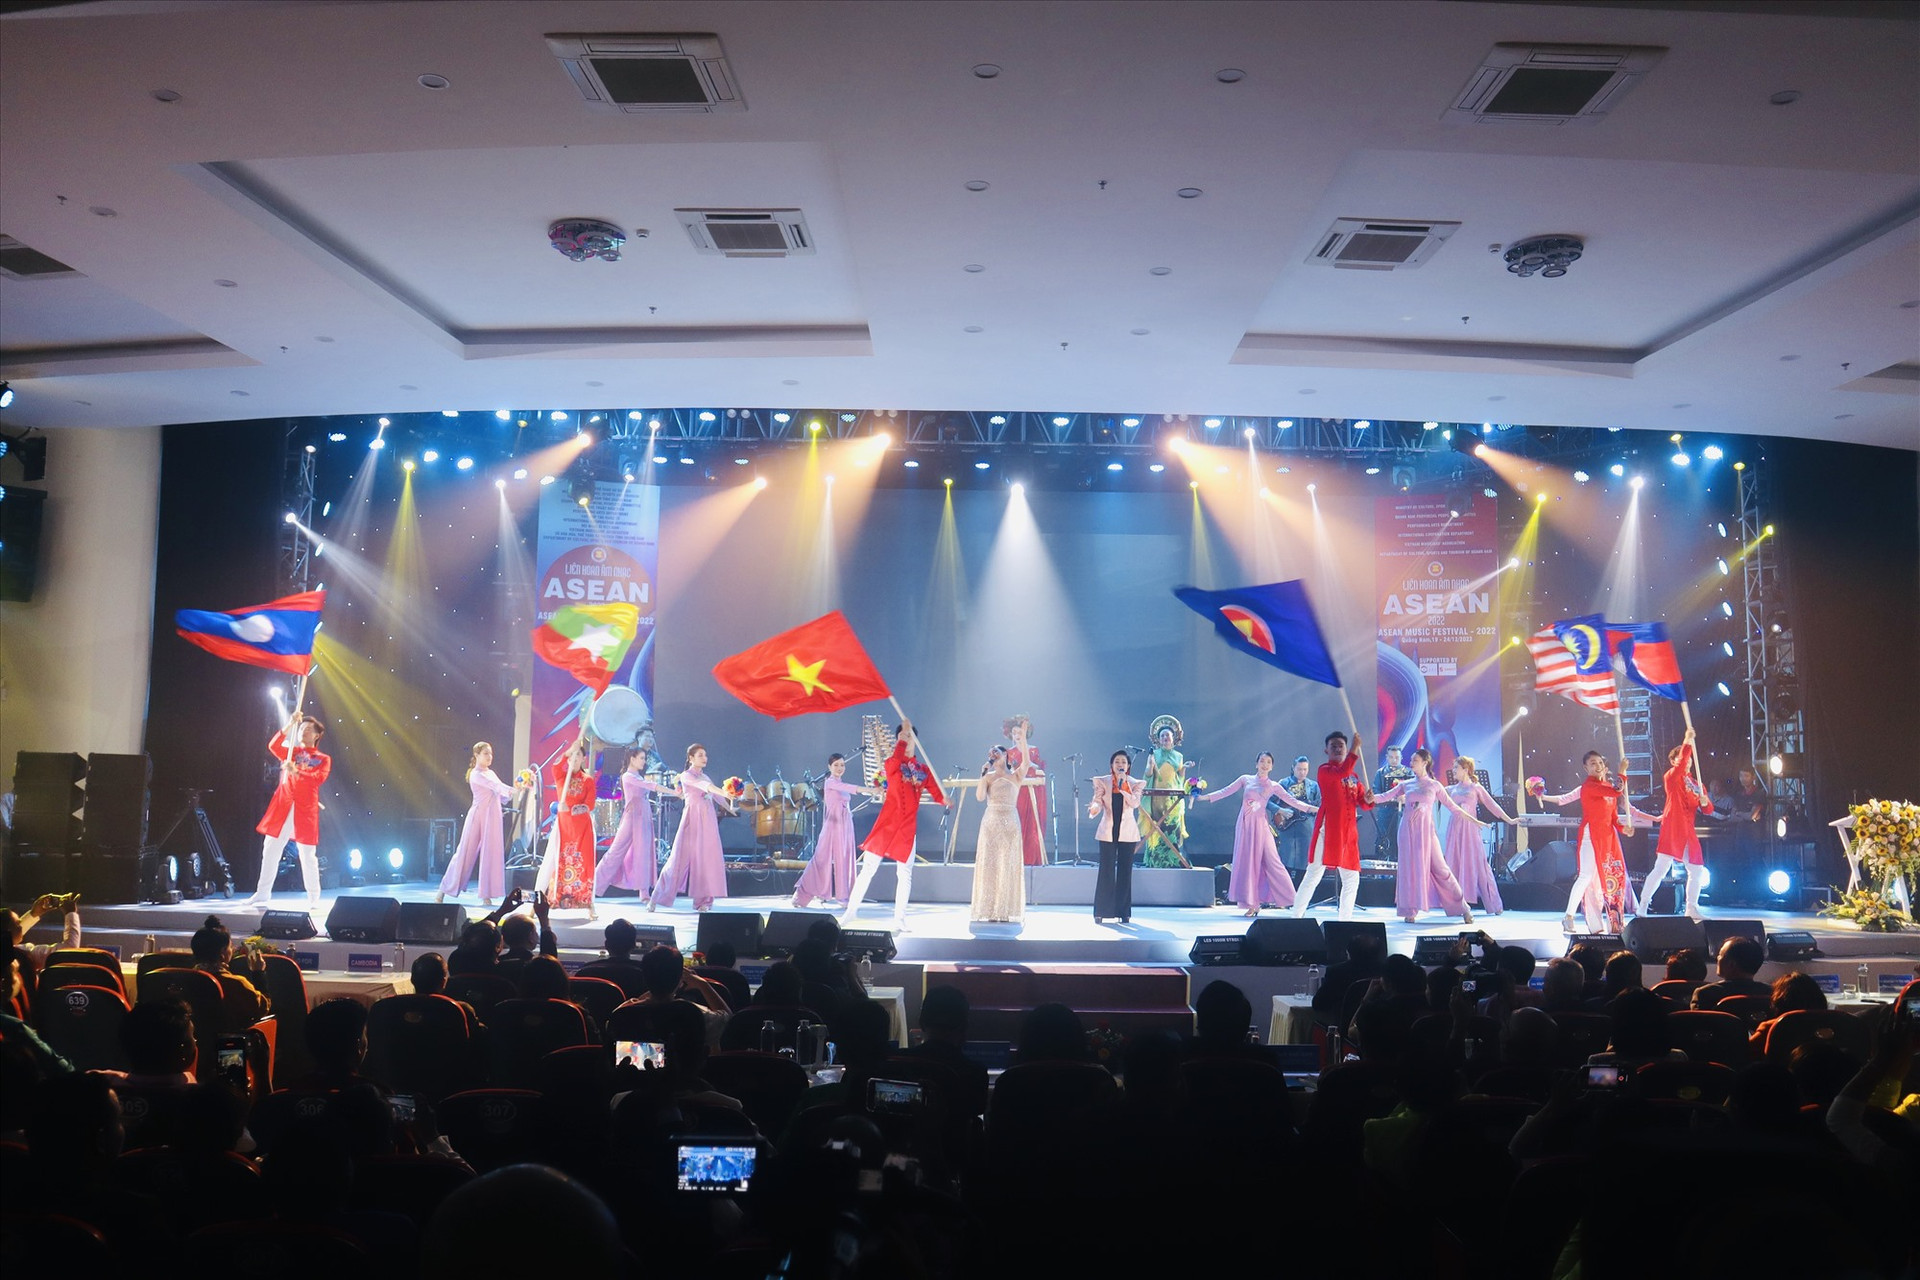 Liên hoan có sự tham gia của 14 đoàn nghệ thuật đến từ 5 nước thành viên ASEAN. Ảnh: Q.T